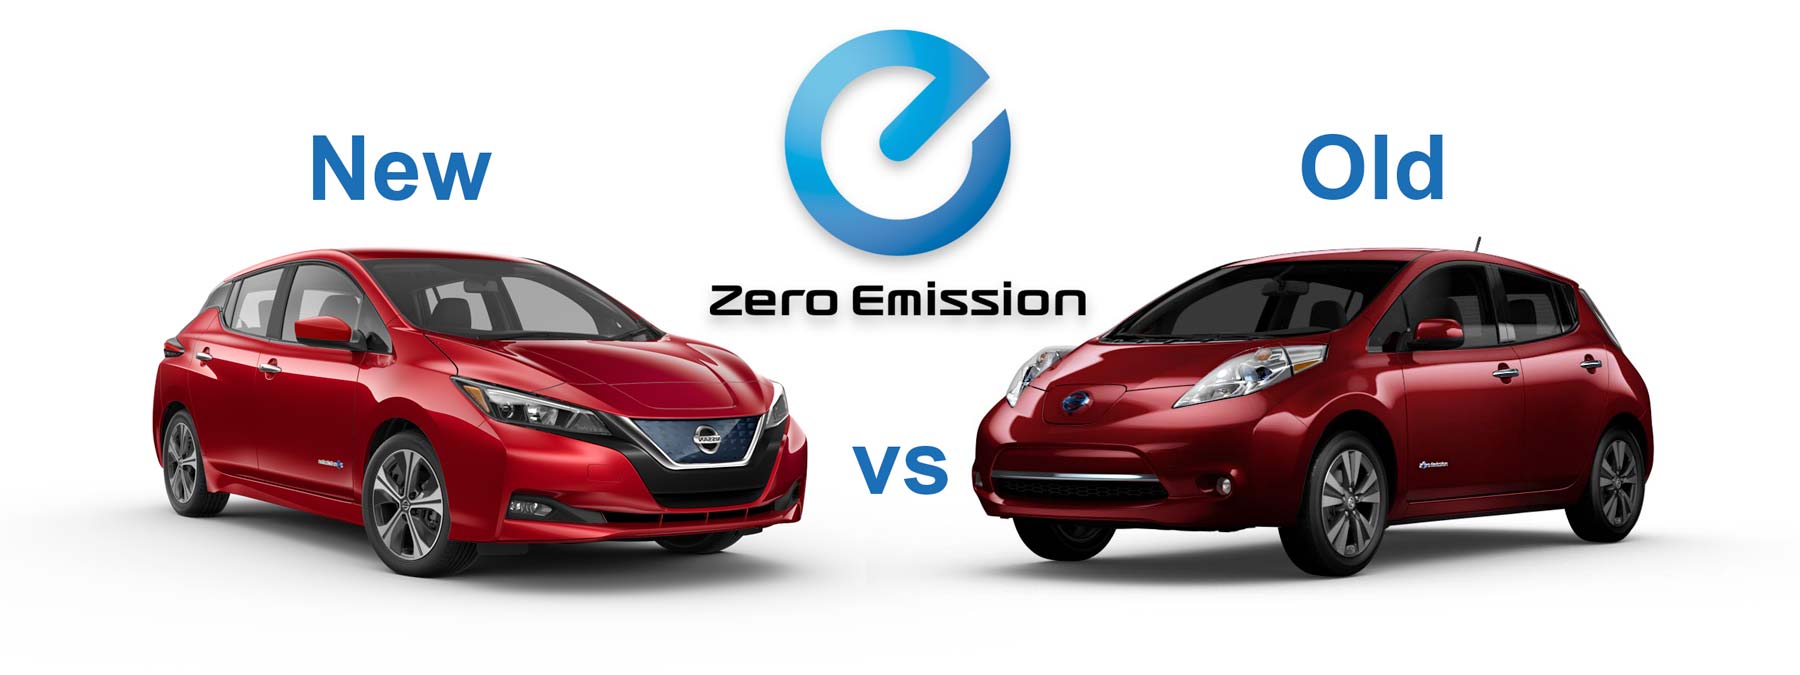 2018 Nissan LEAF vs 2017 Nissan LEAF - Comparison